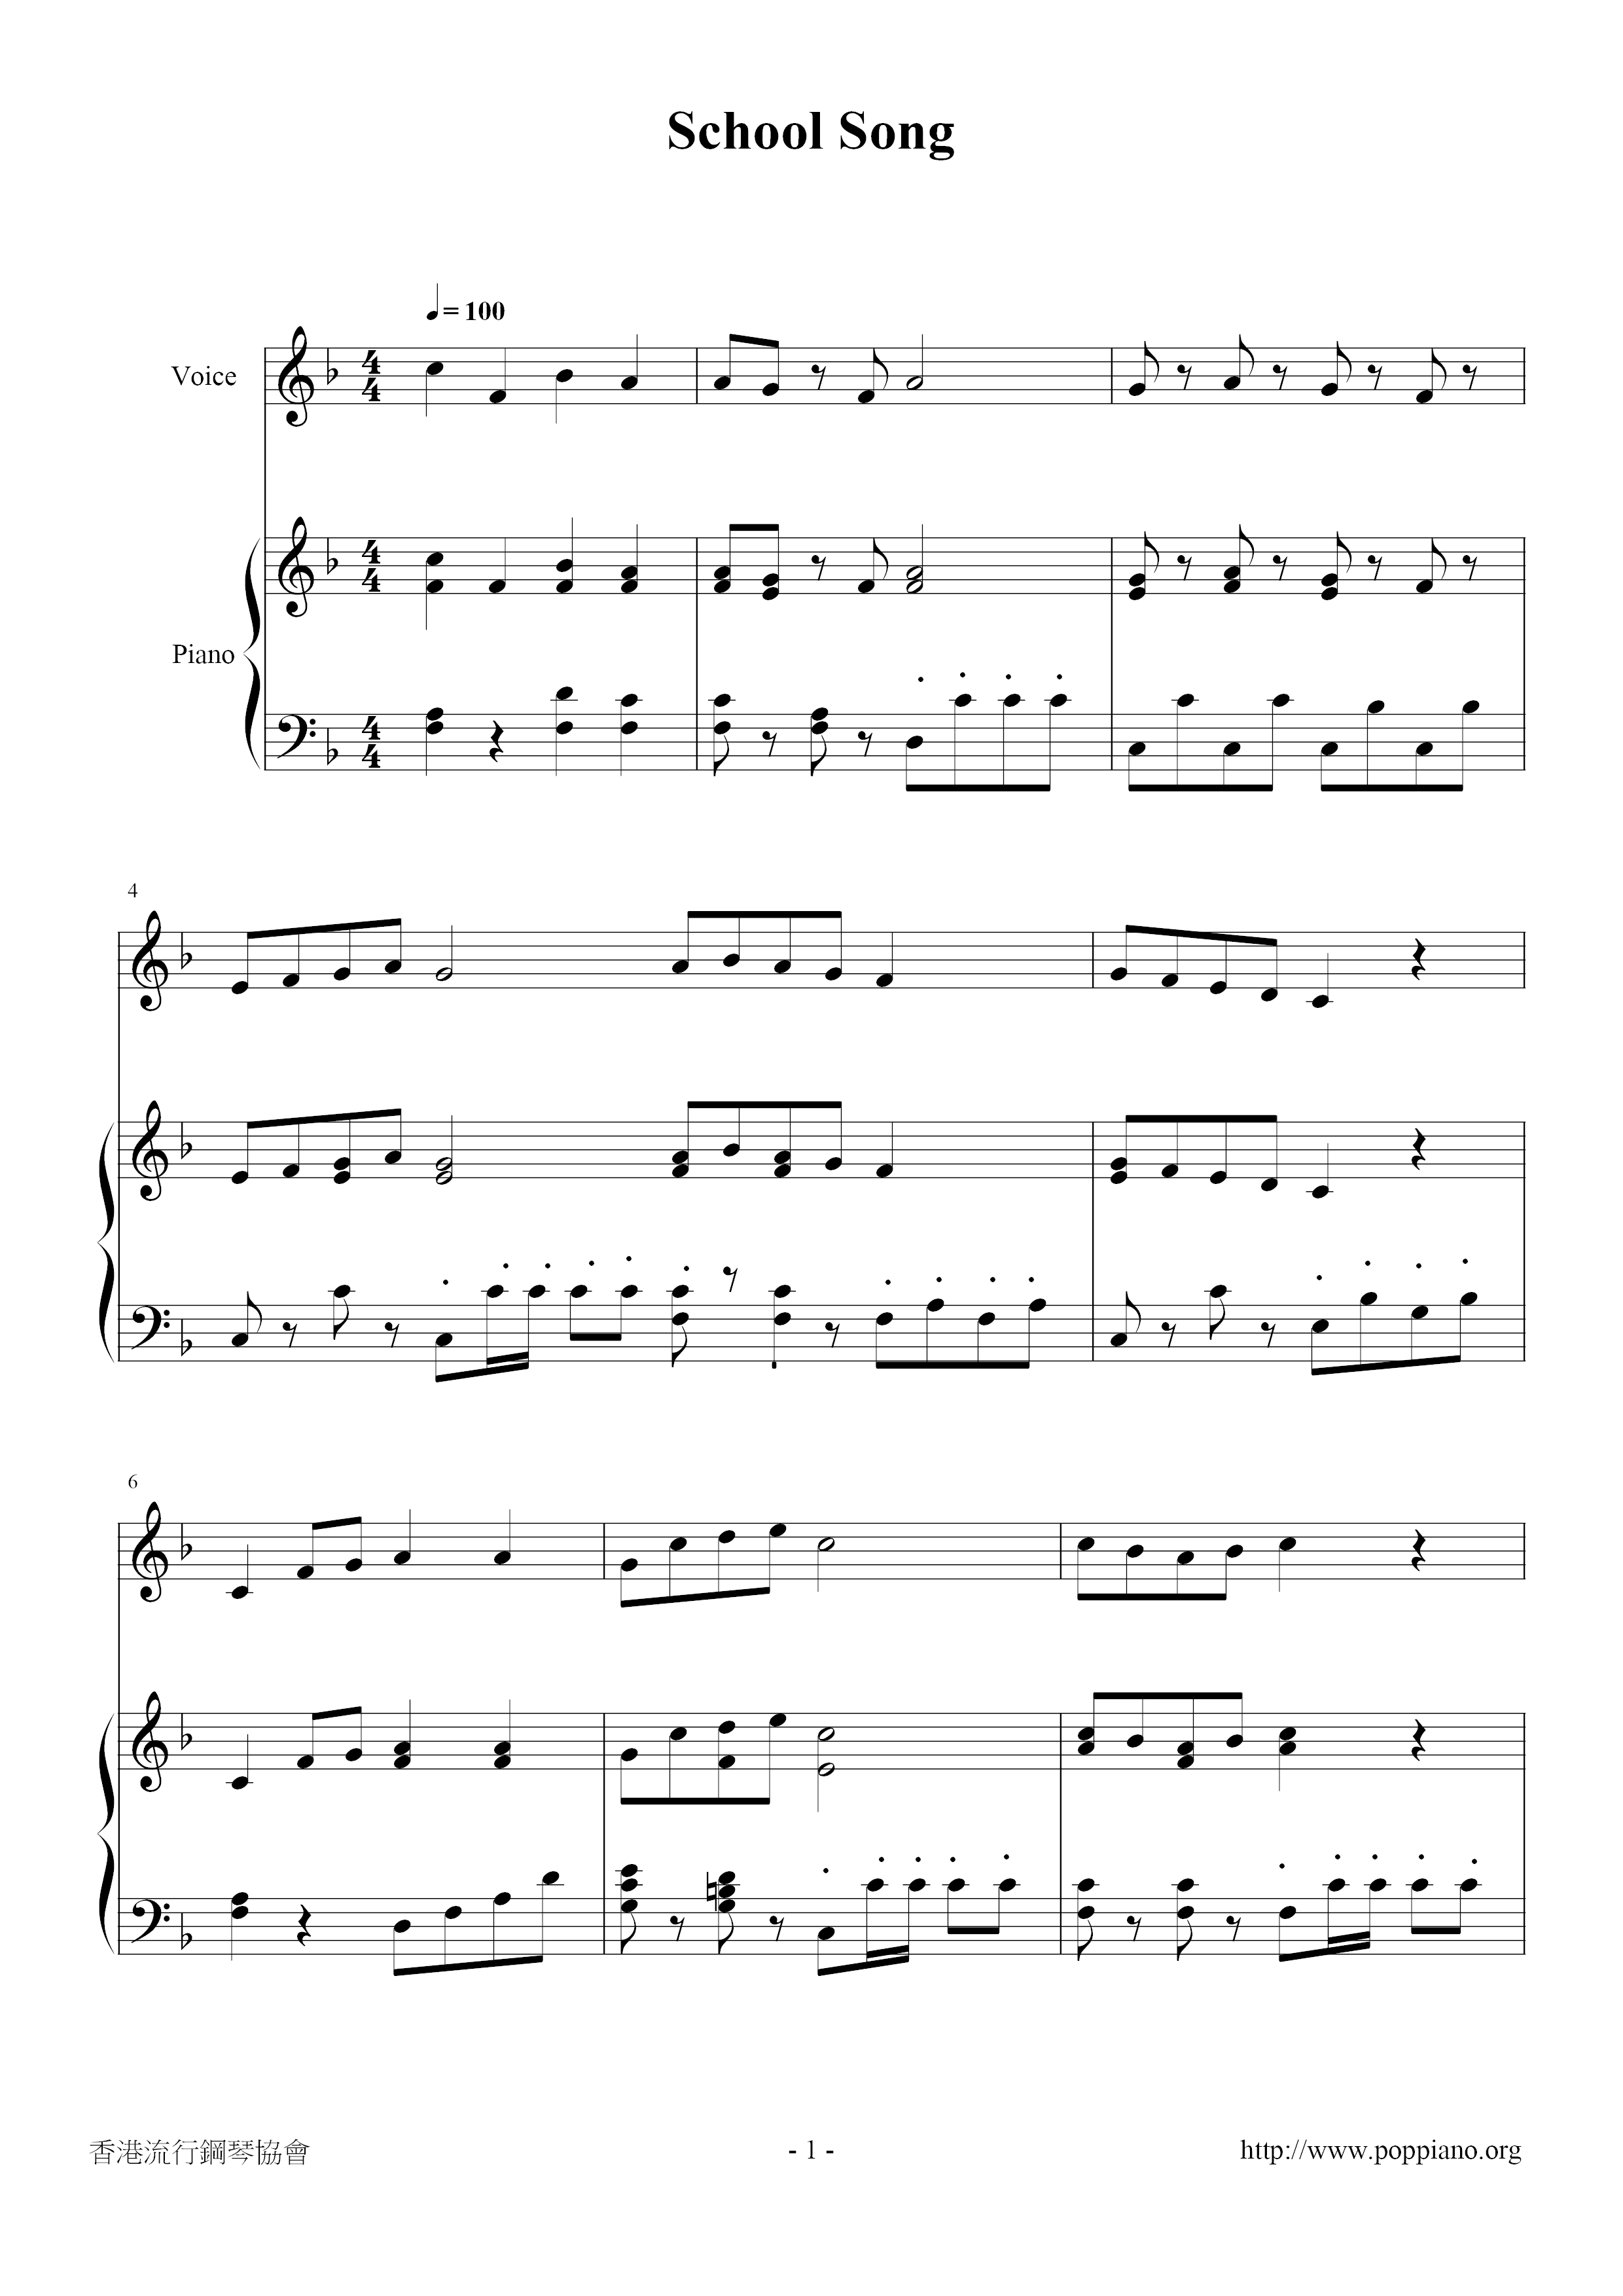 dcfwms School Song Score